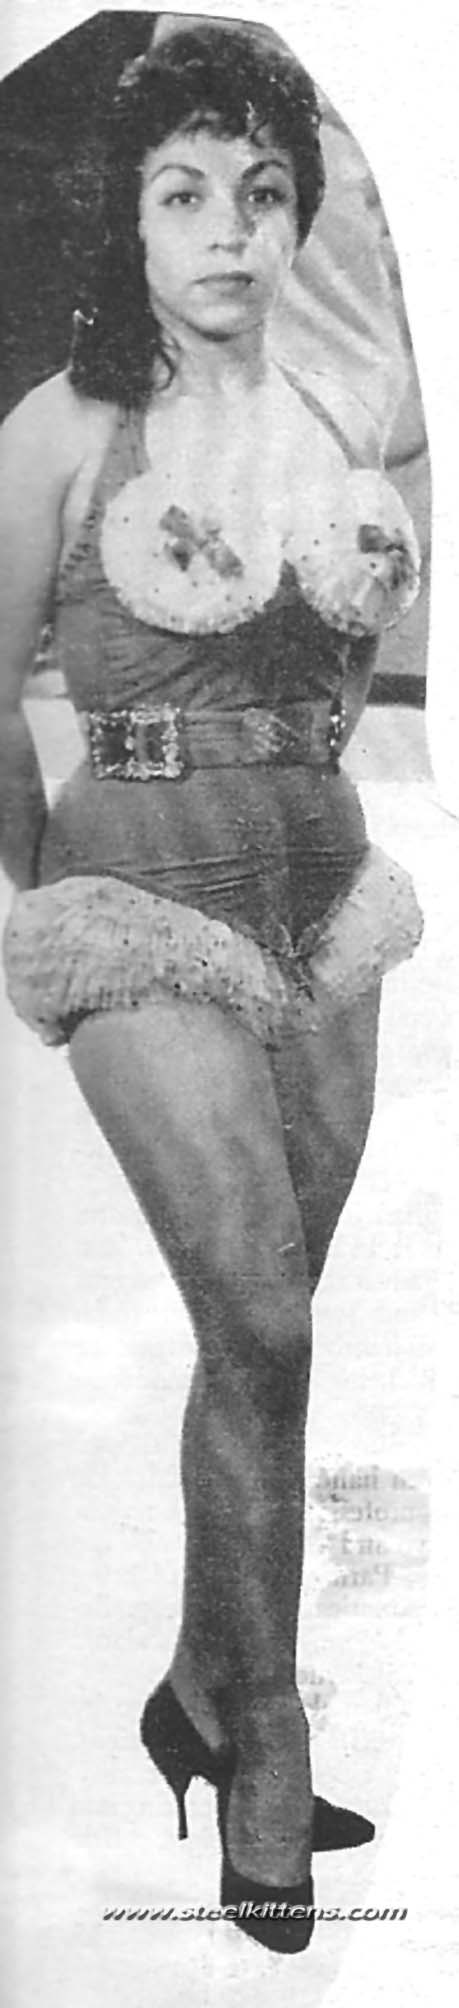 Carmine Scorpien : Woman Wrestler